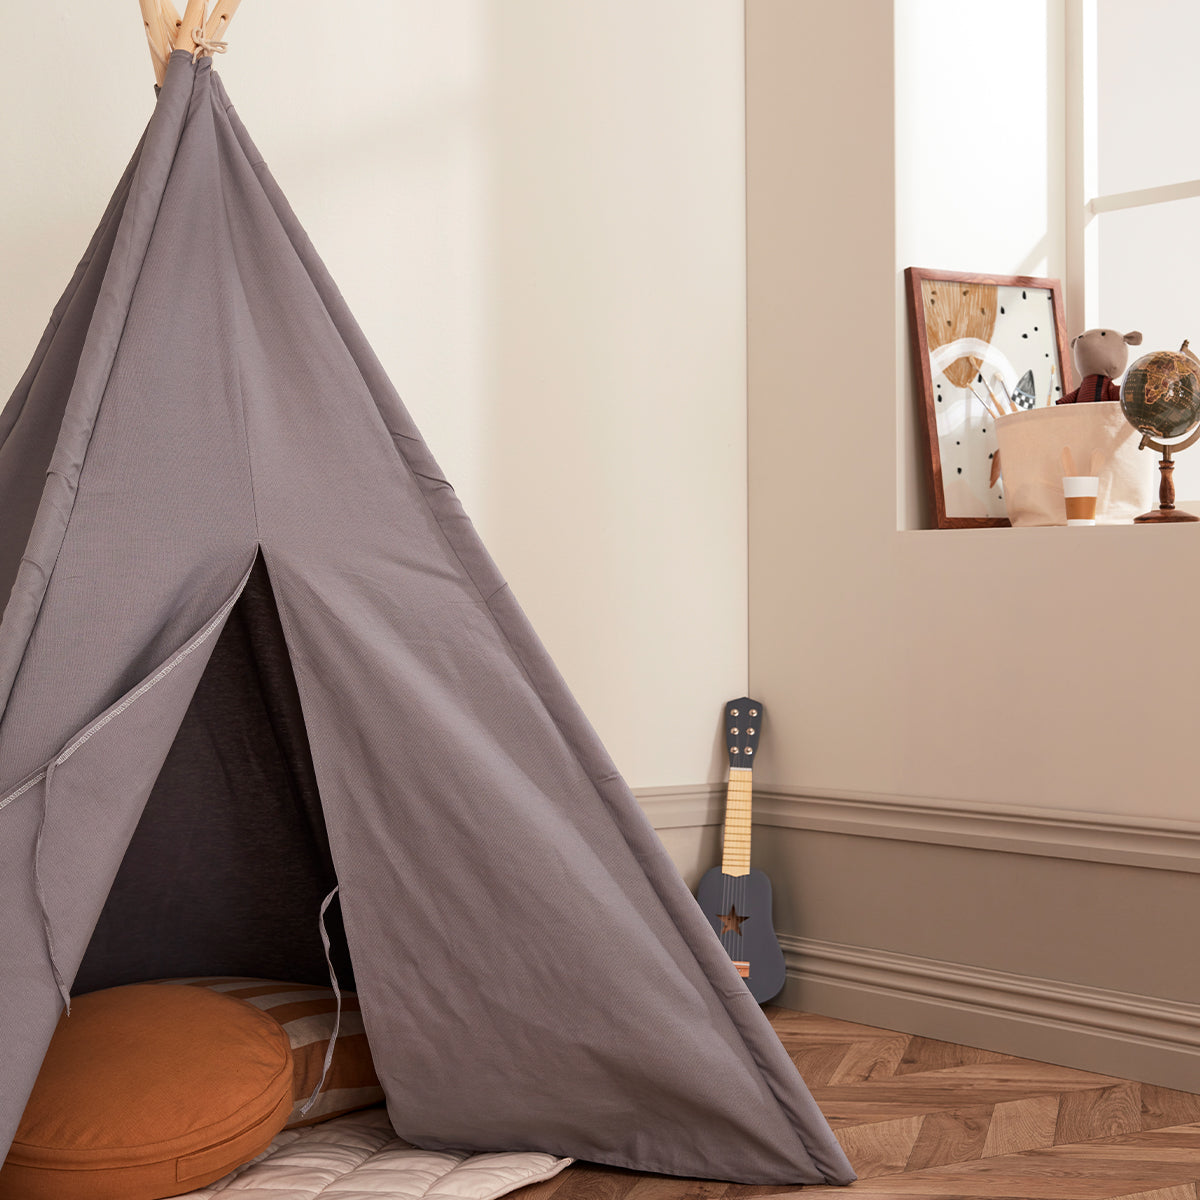 De Kid's Concept tipi tent grijs is het perfecte plekje voor jouw kindje om lekker in te spelen of in te relaxen. Gebruik de tipi als huisje, wigwam, speeltent of neem dekens, kussens en een boek mee en ga lekker lezen. VanZus.